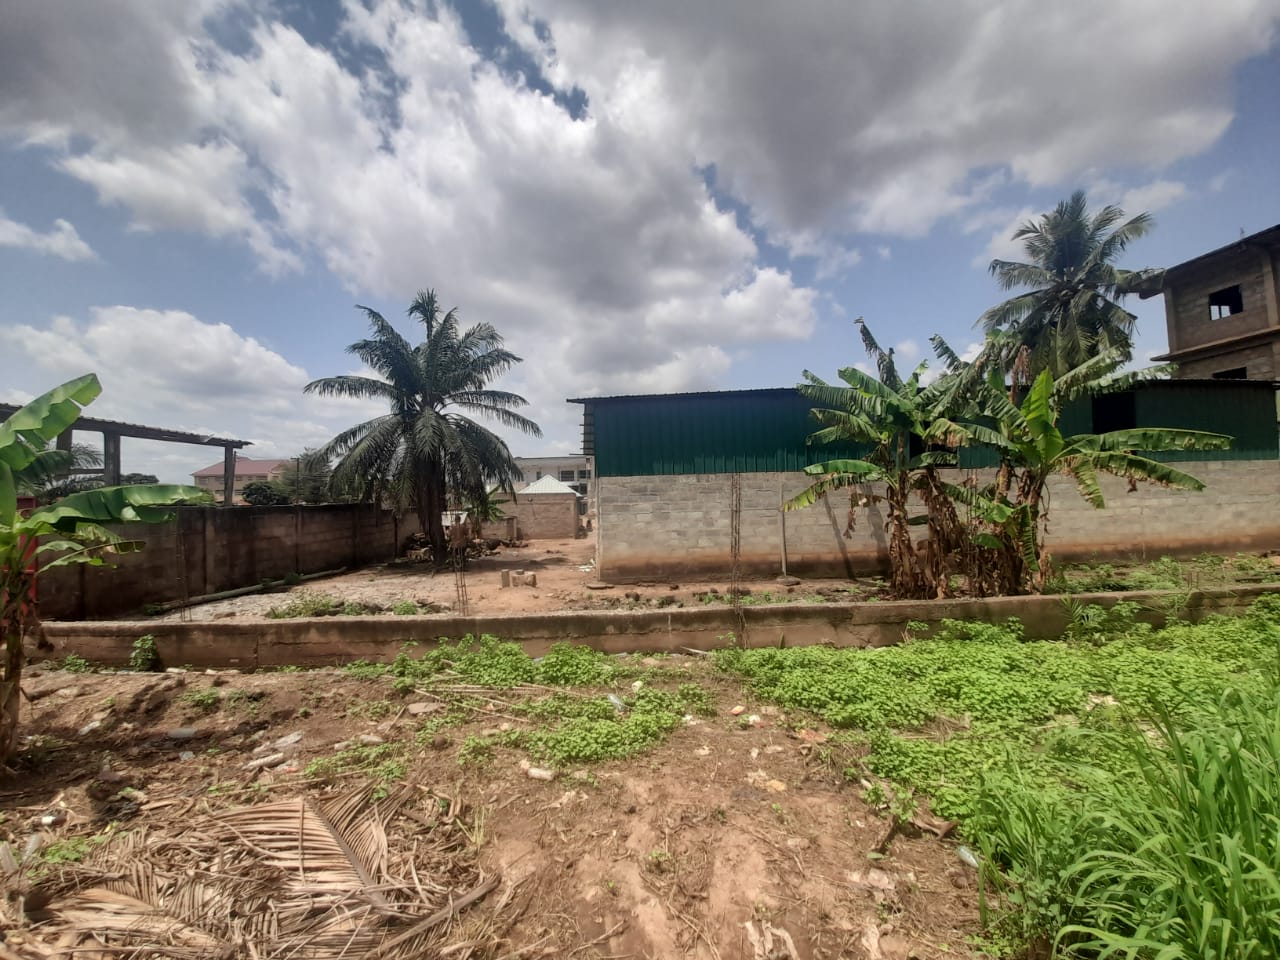 Titled Land for Sale at Pokuase